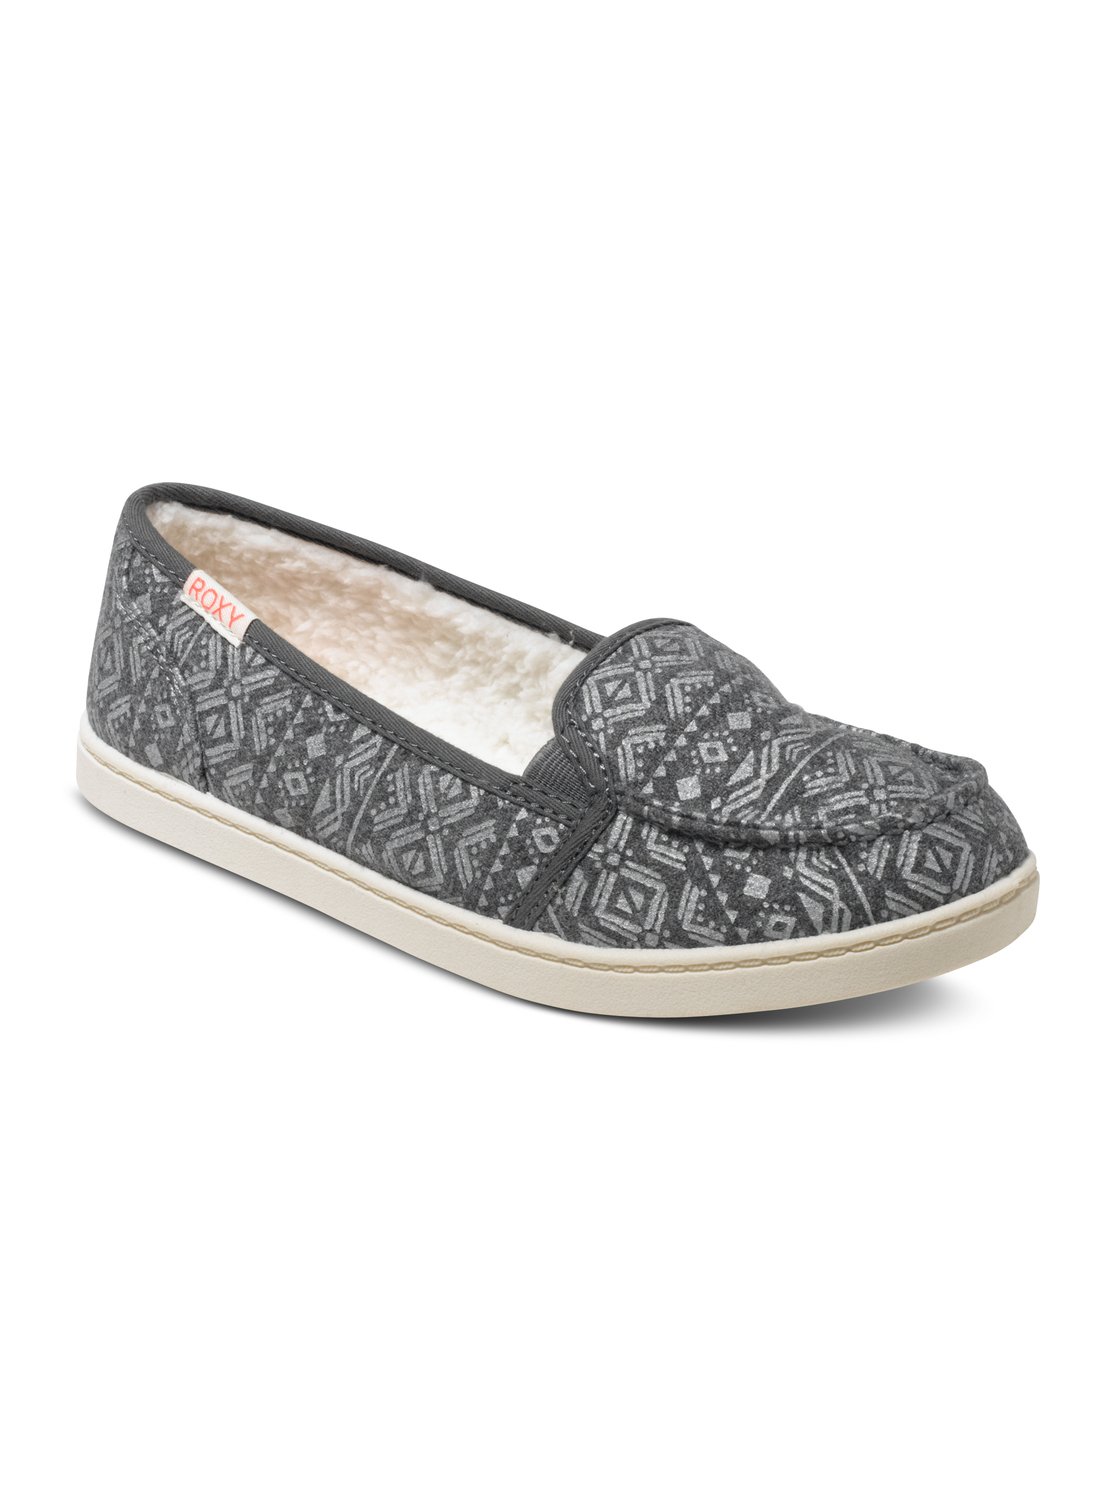 Lido Wool Slip-On Shoes ARJS600335 | Roxy